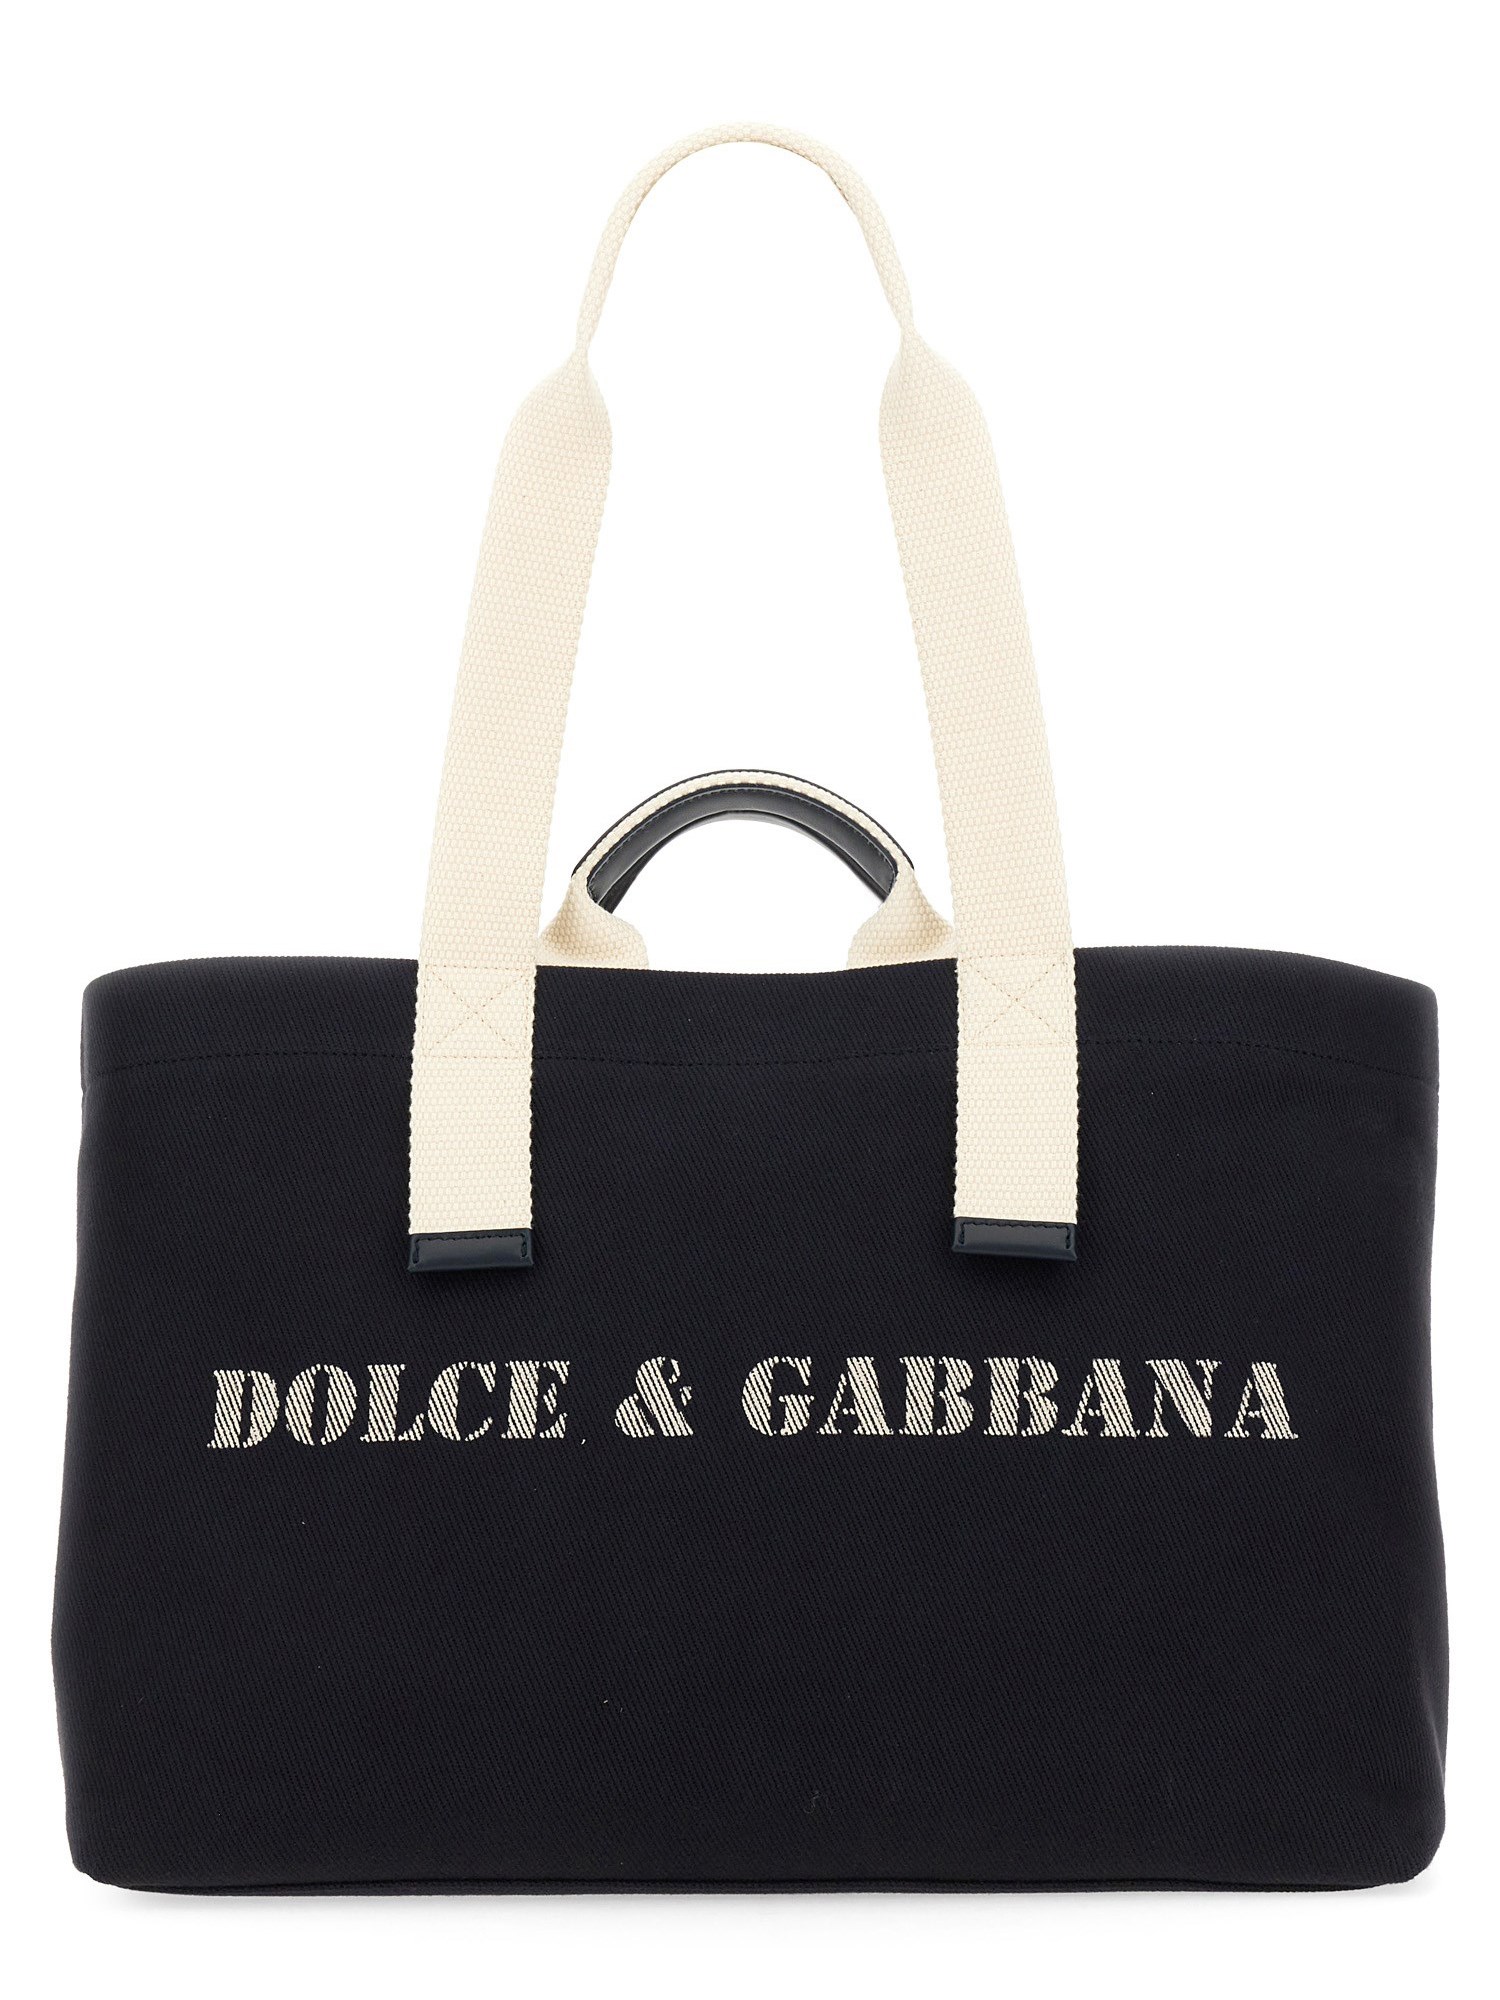 dolce & gabbana shopping bag with logo